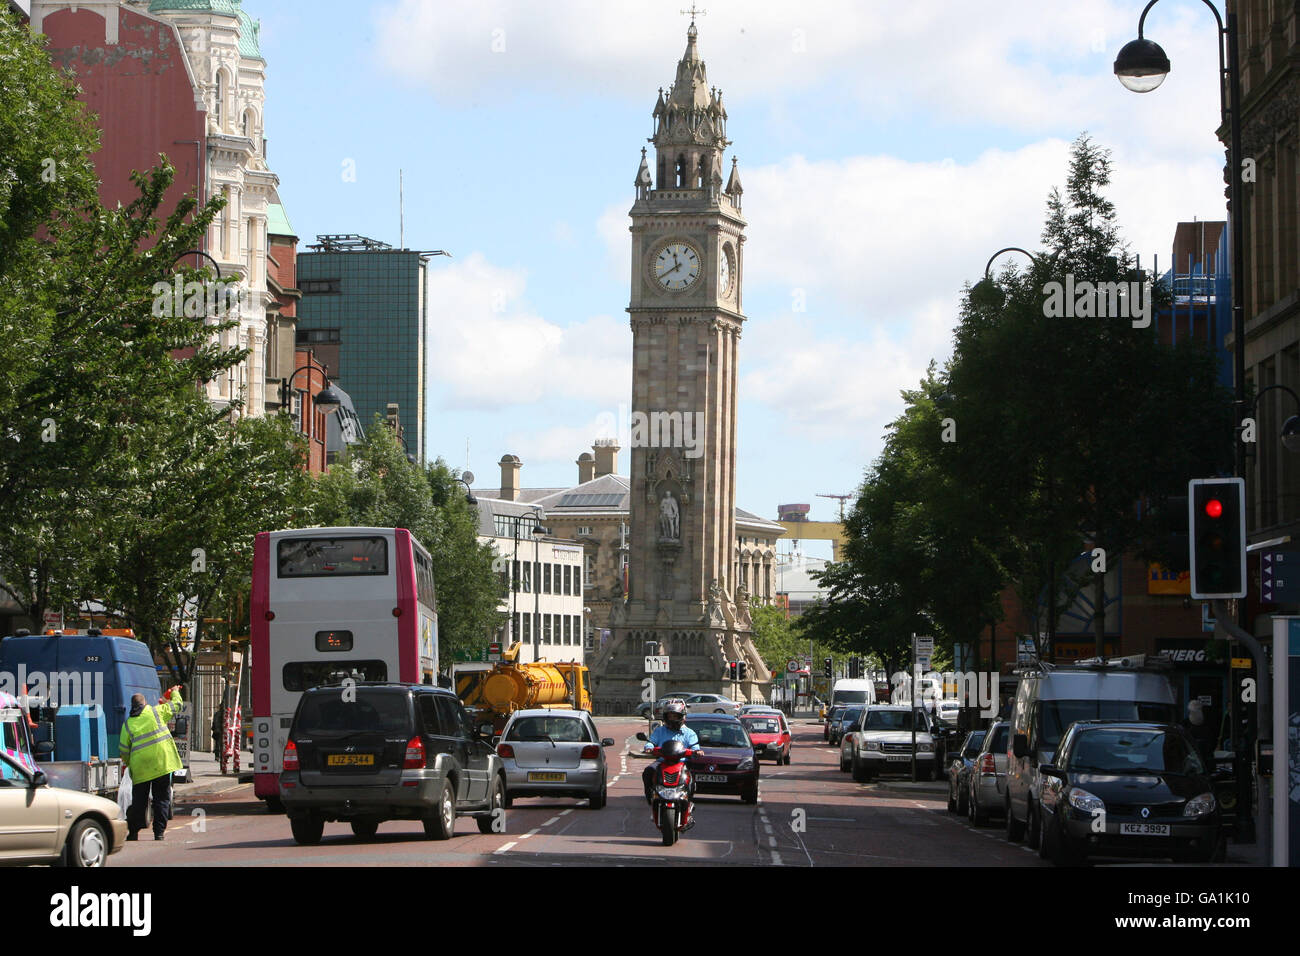 Albert Memorial Clock - Belfast, Northern Ireland. Albert Memorial Clock in Belfast city centre. Stock Photo